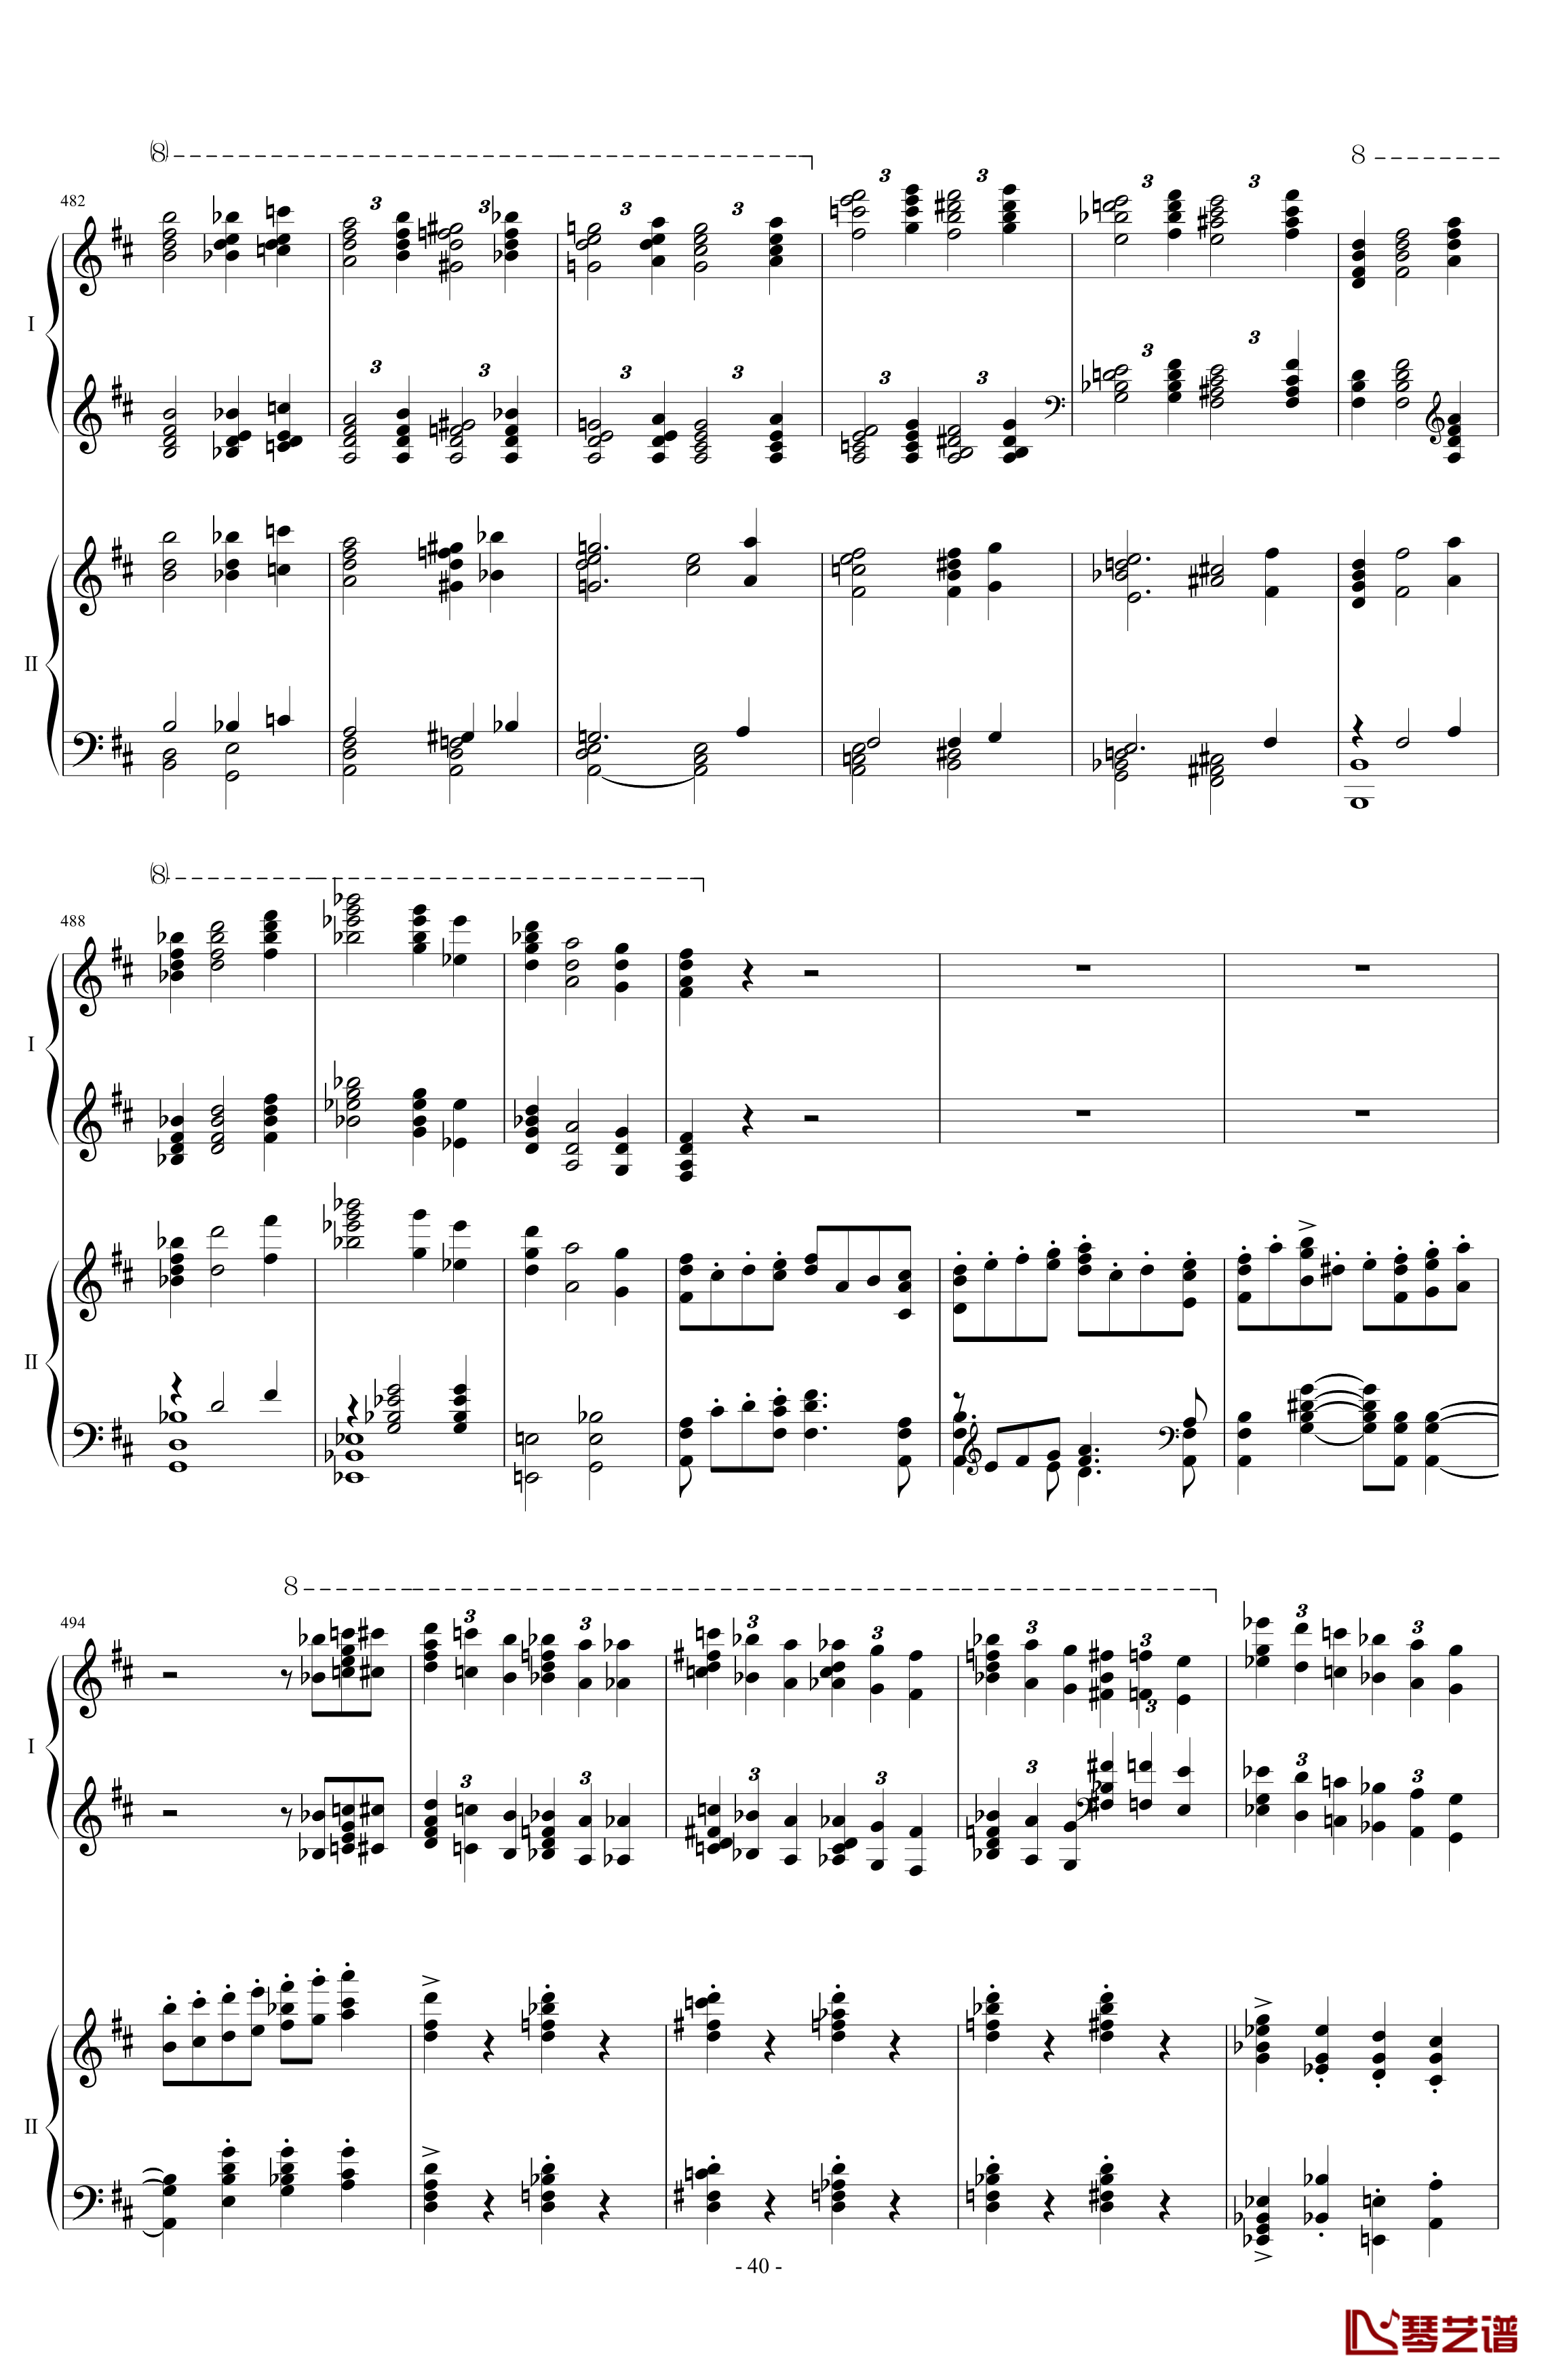 拉三第三乐章41页双钢琴钢琴谱-最难钢琴曲-拉赫马尼若夫40